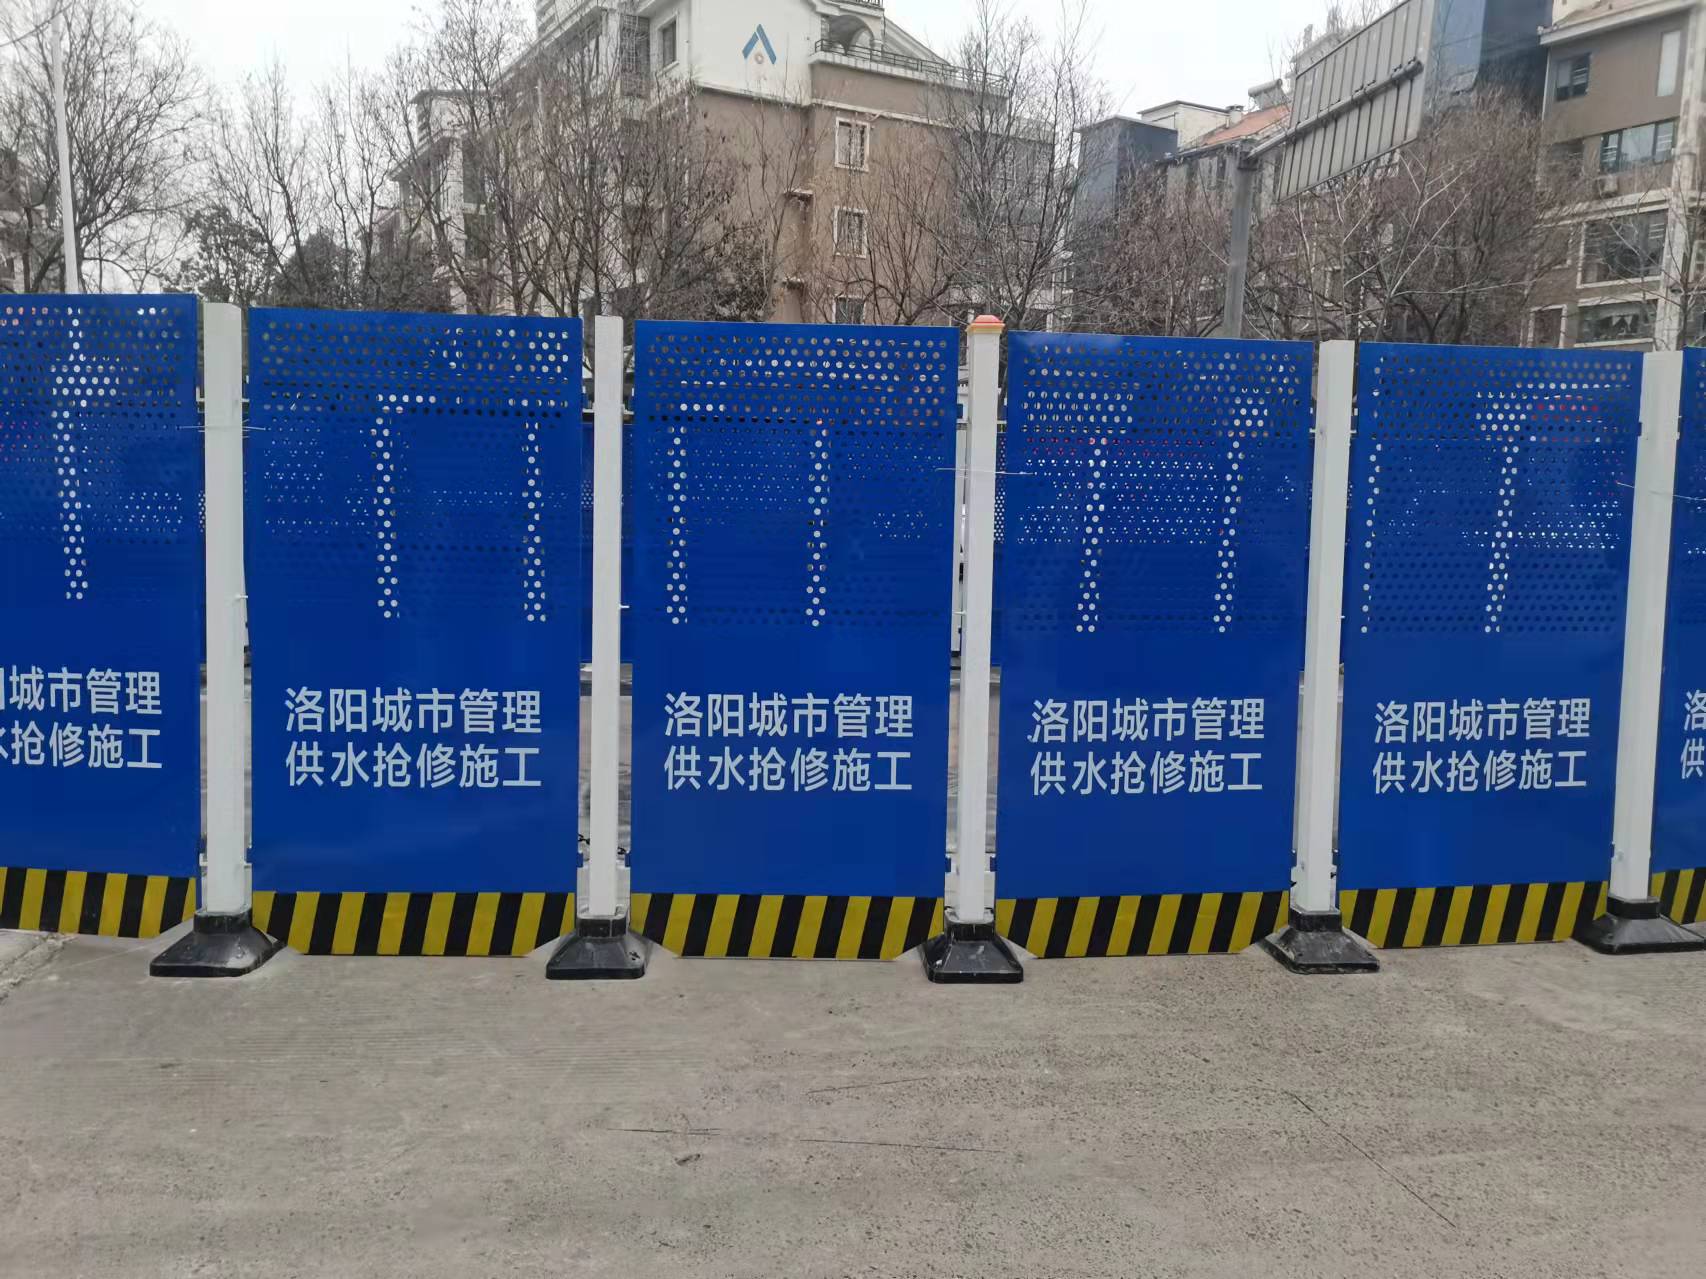 红色/橙色/蓝色 洛阳市政热力管道抢修围挡(图8)